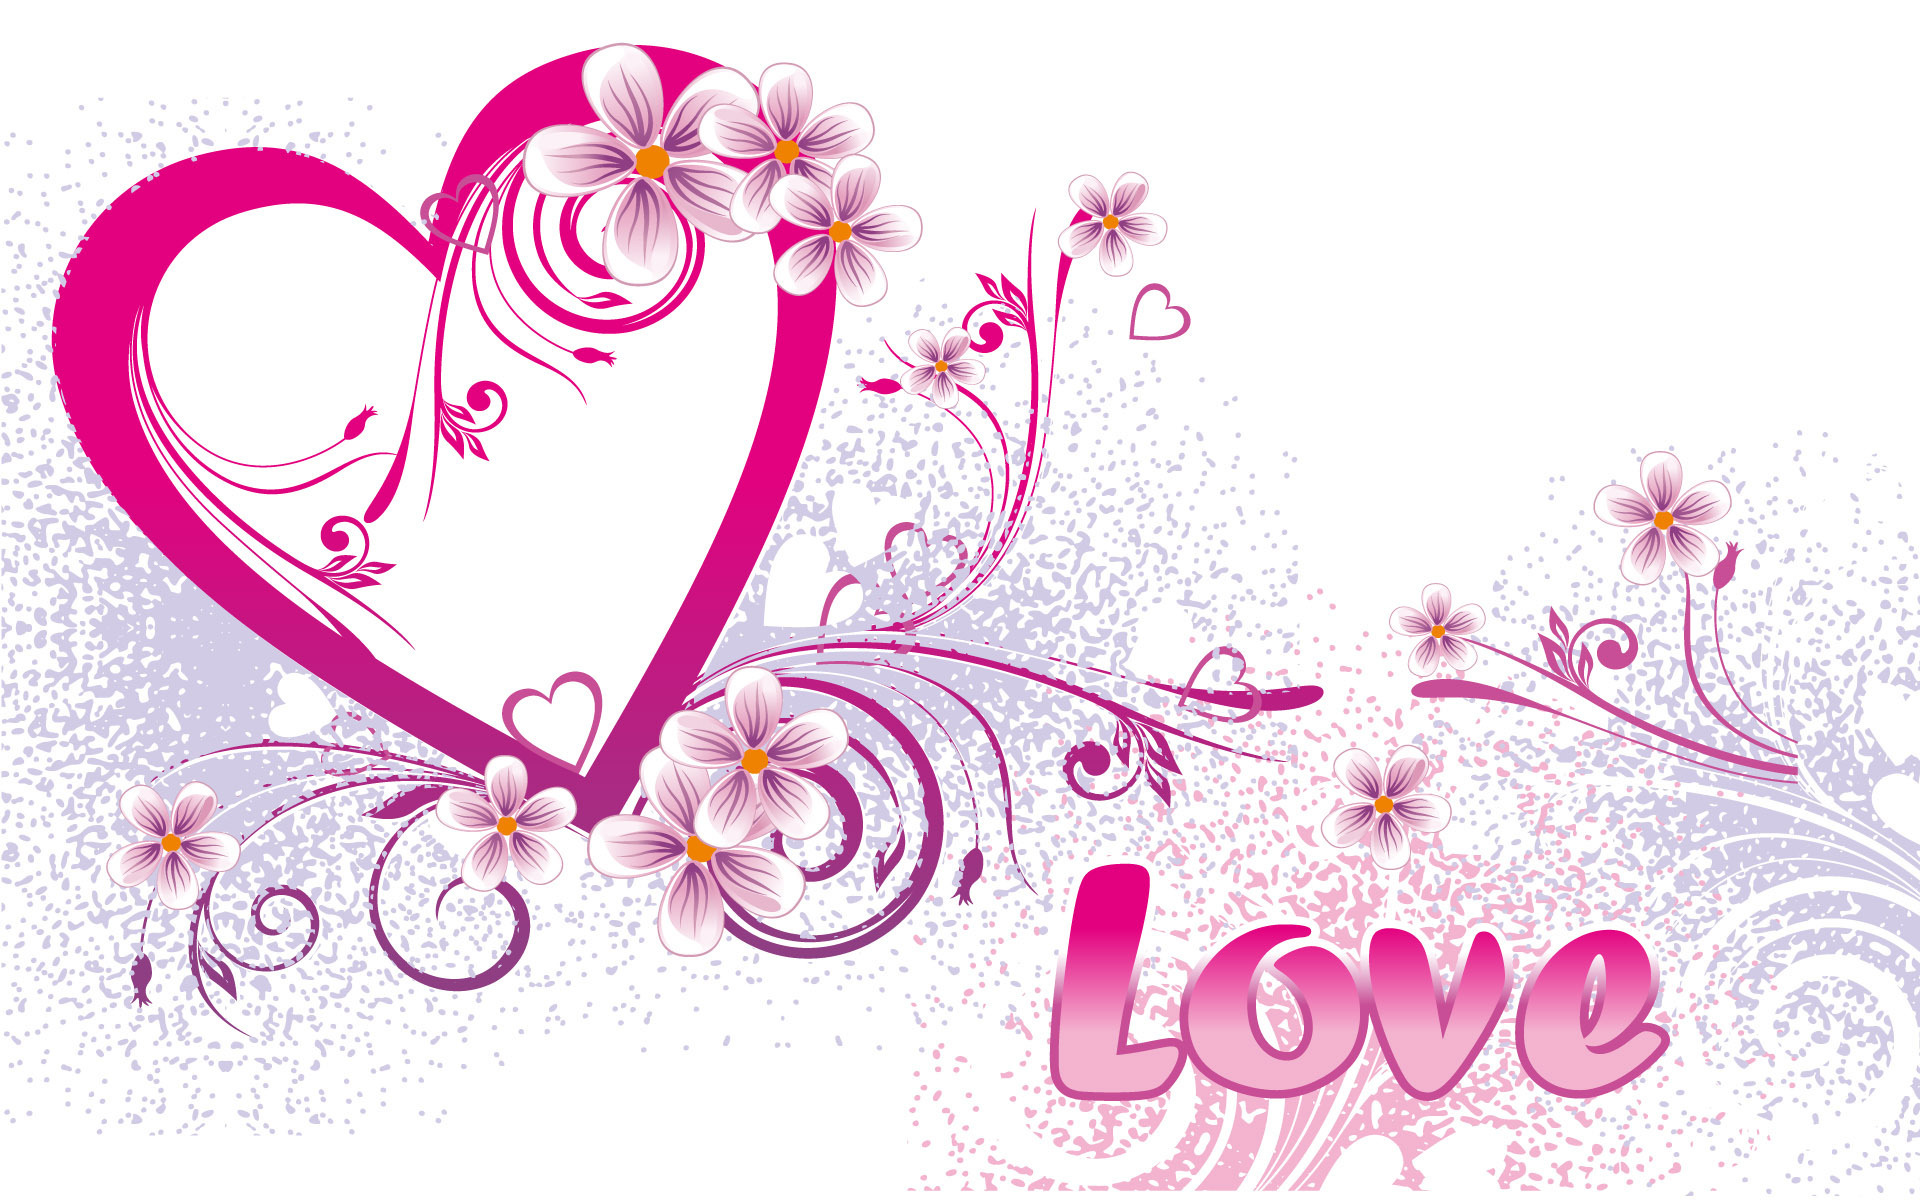 Love Design 2151771297 - Love Design 2 - Love, Design